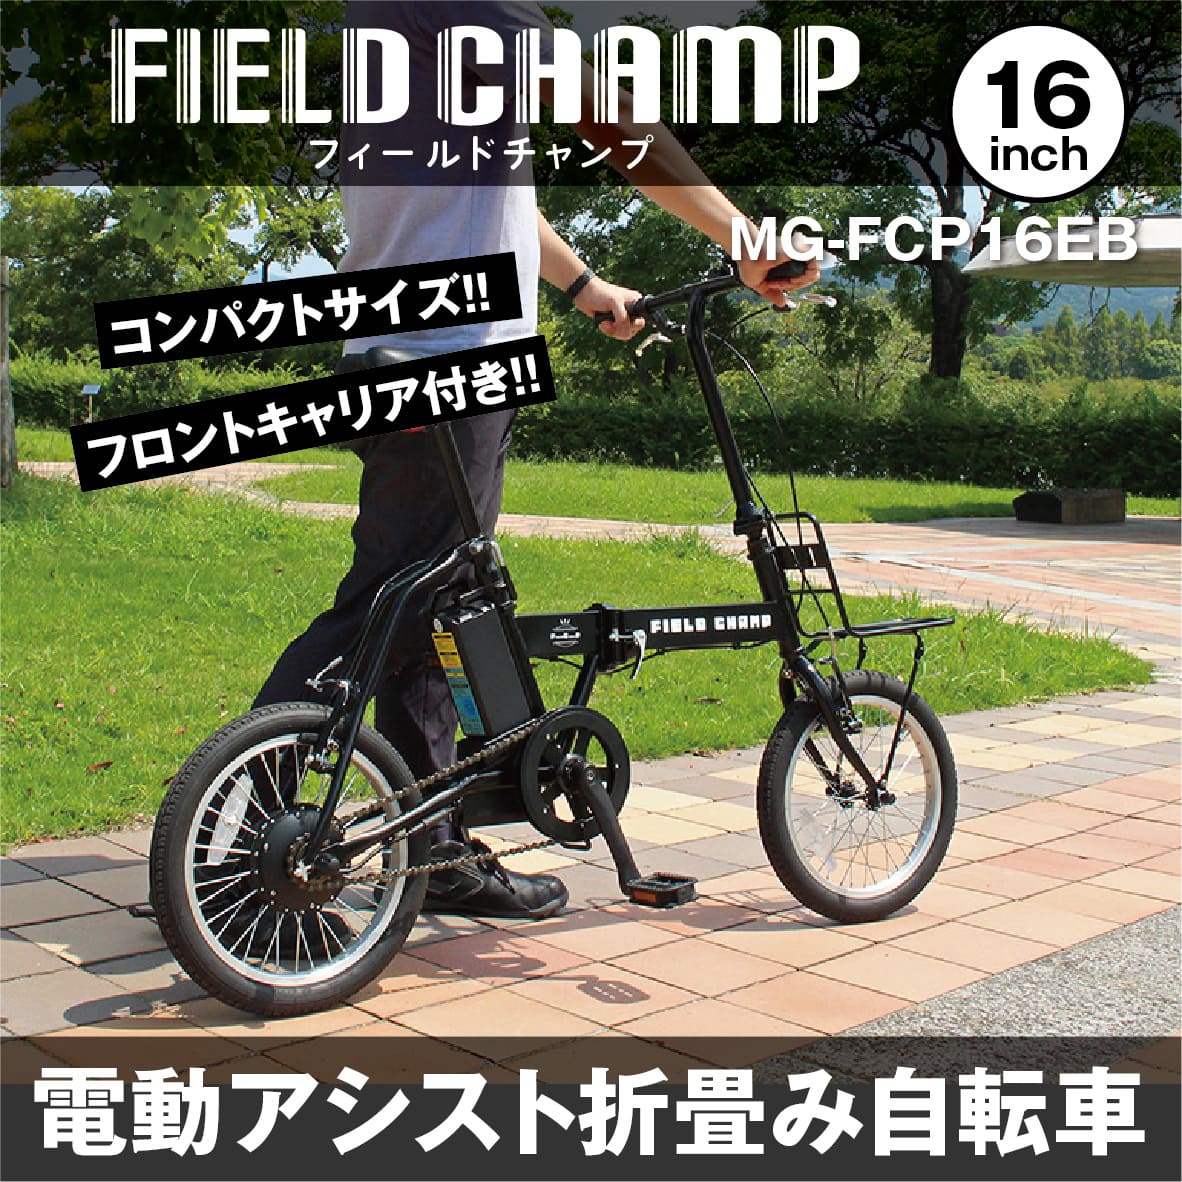 MG-FCP16EB フィールドチャンプ ミムゴ 電動アシスト 折り畳み 自転車 FDB16EB 16インチモデル